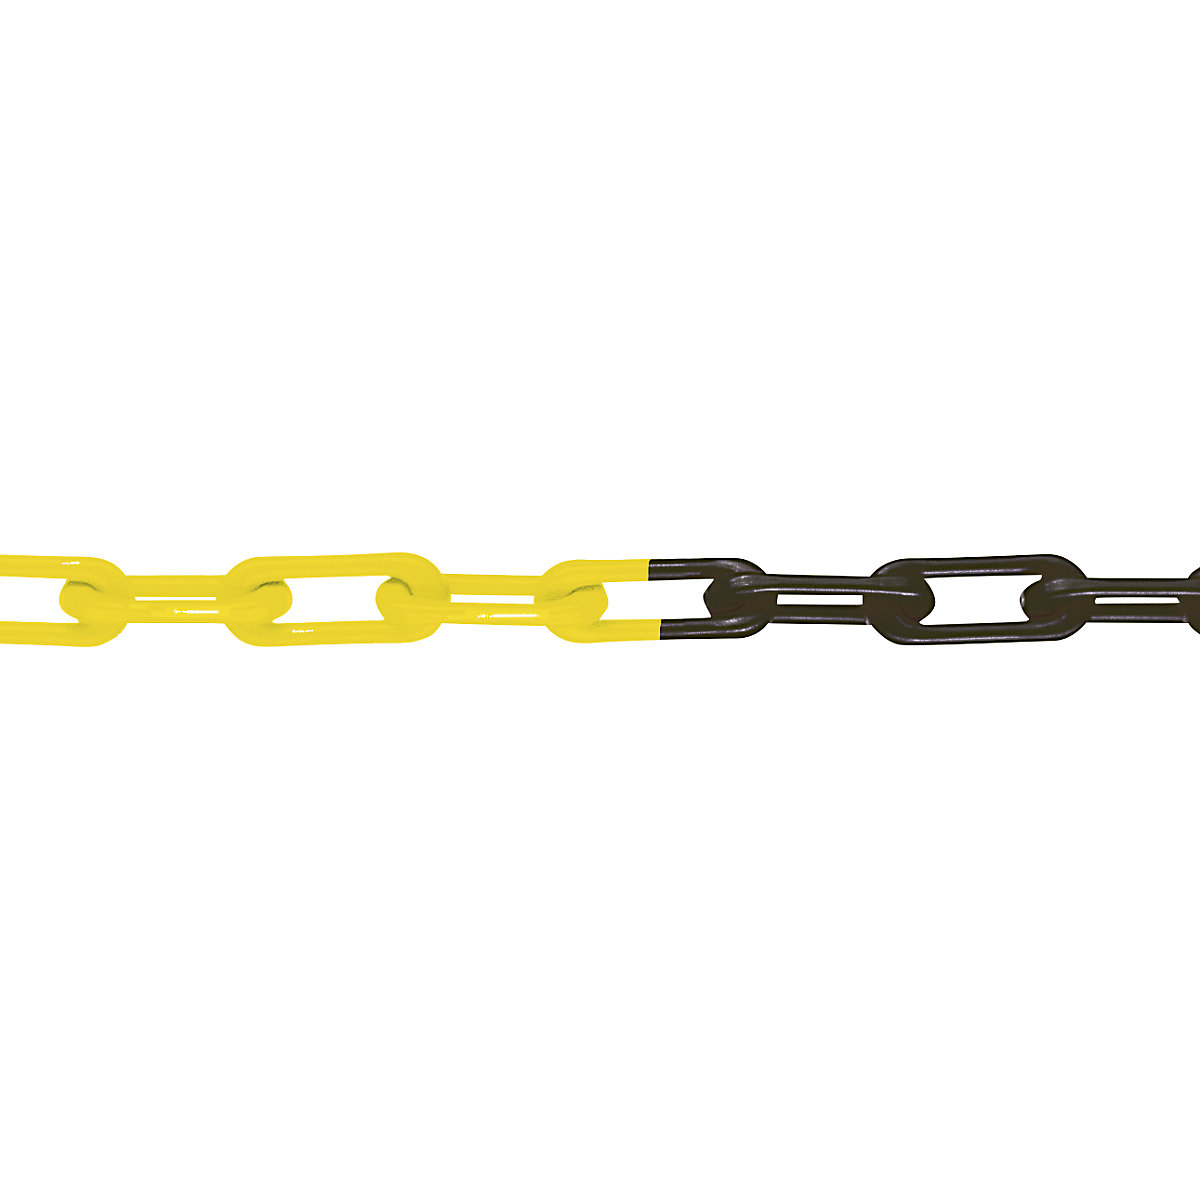 Nylon-Gütekette, MNK-Güte 6, Bundlänge 50 m, schwarz-gelb, ab 4 Stück